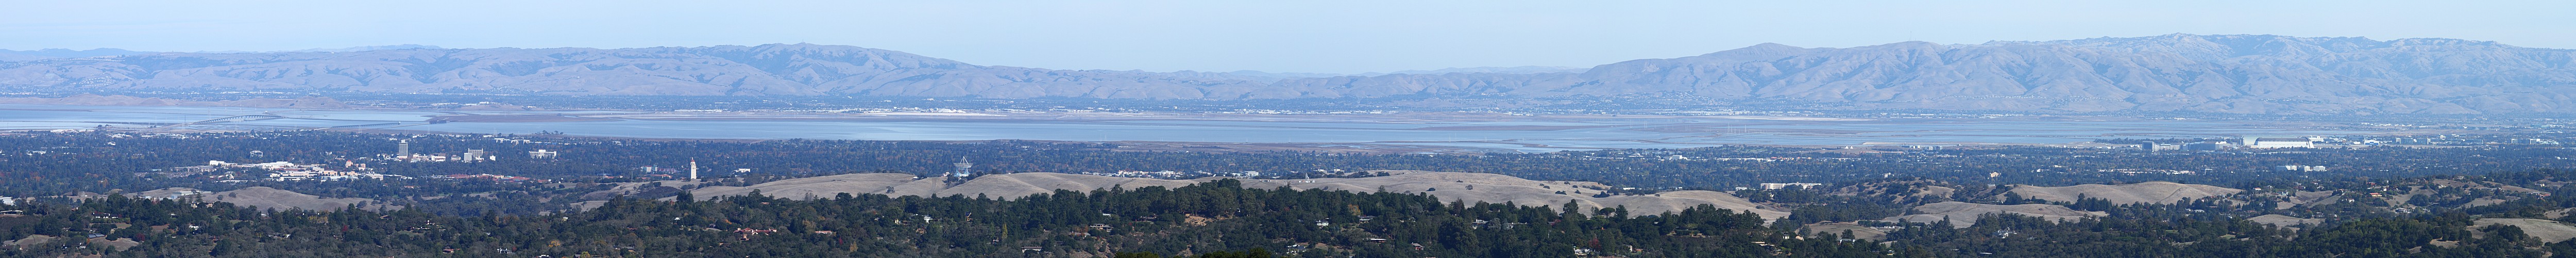 San Francisco Bay - Dumbarton to Moffett Field